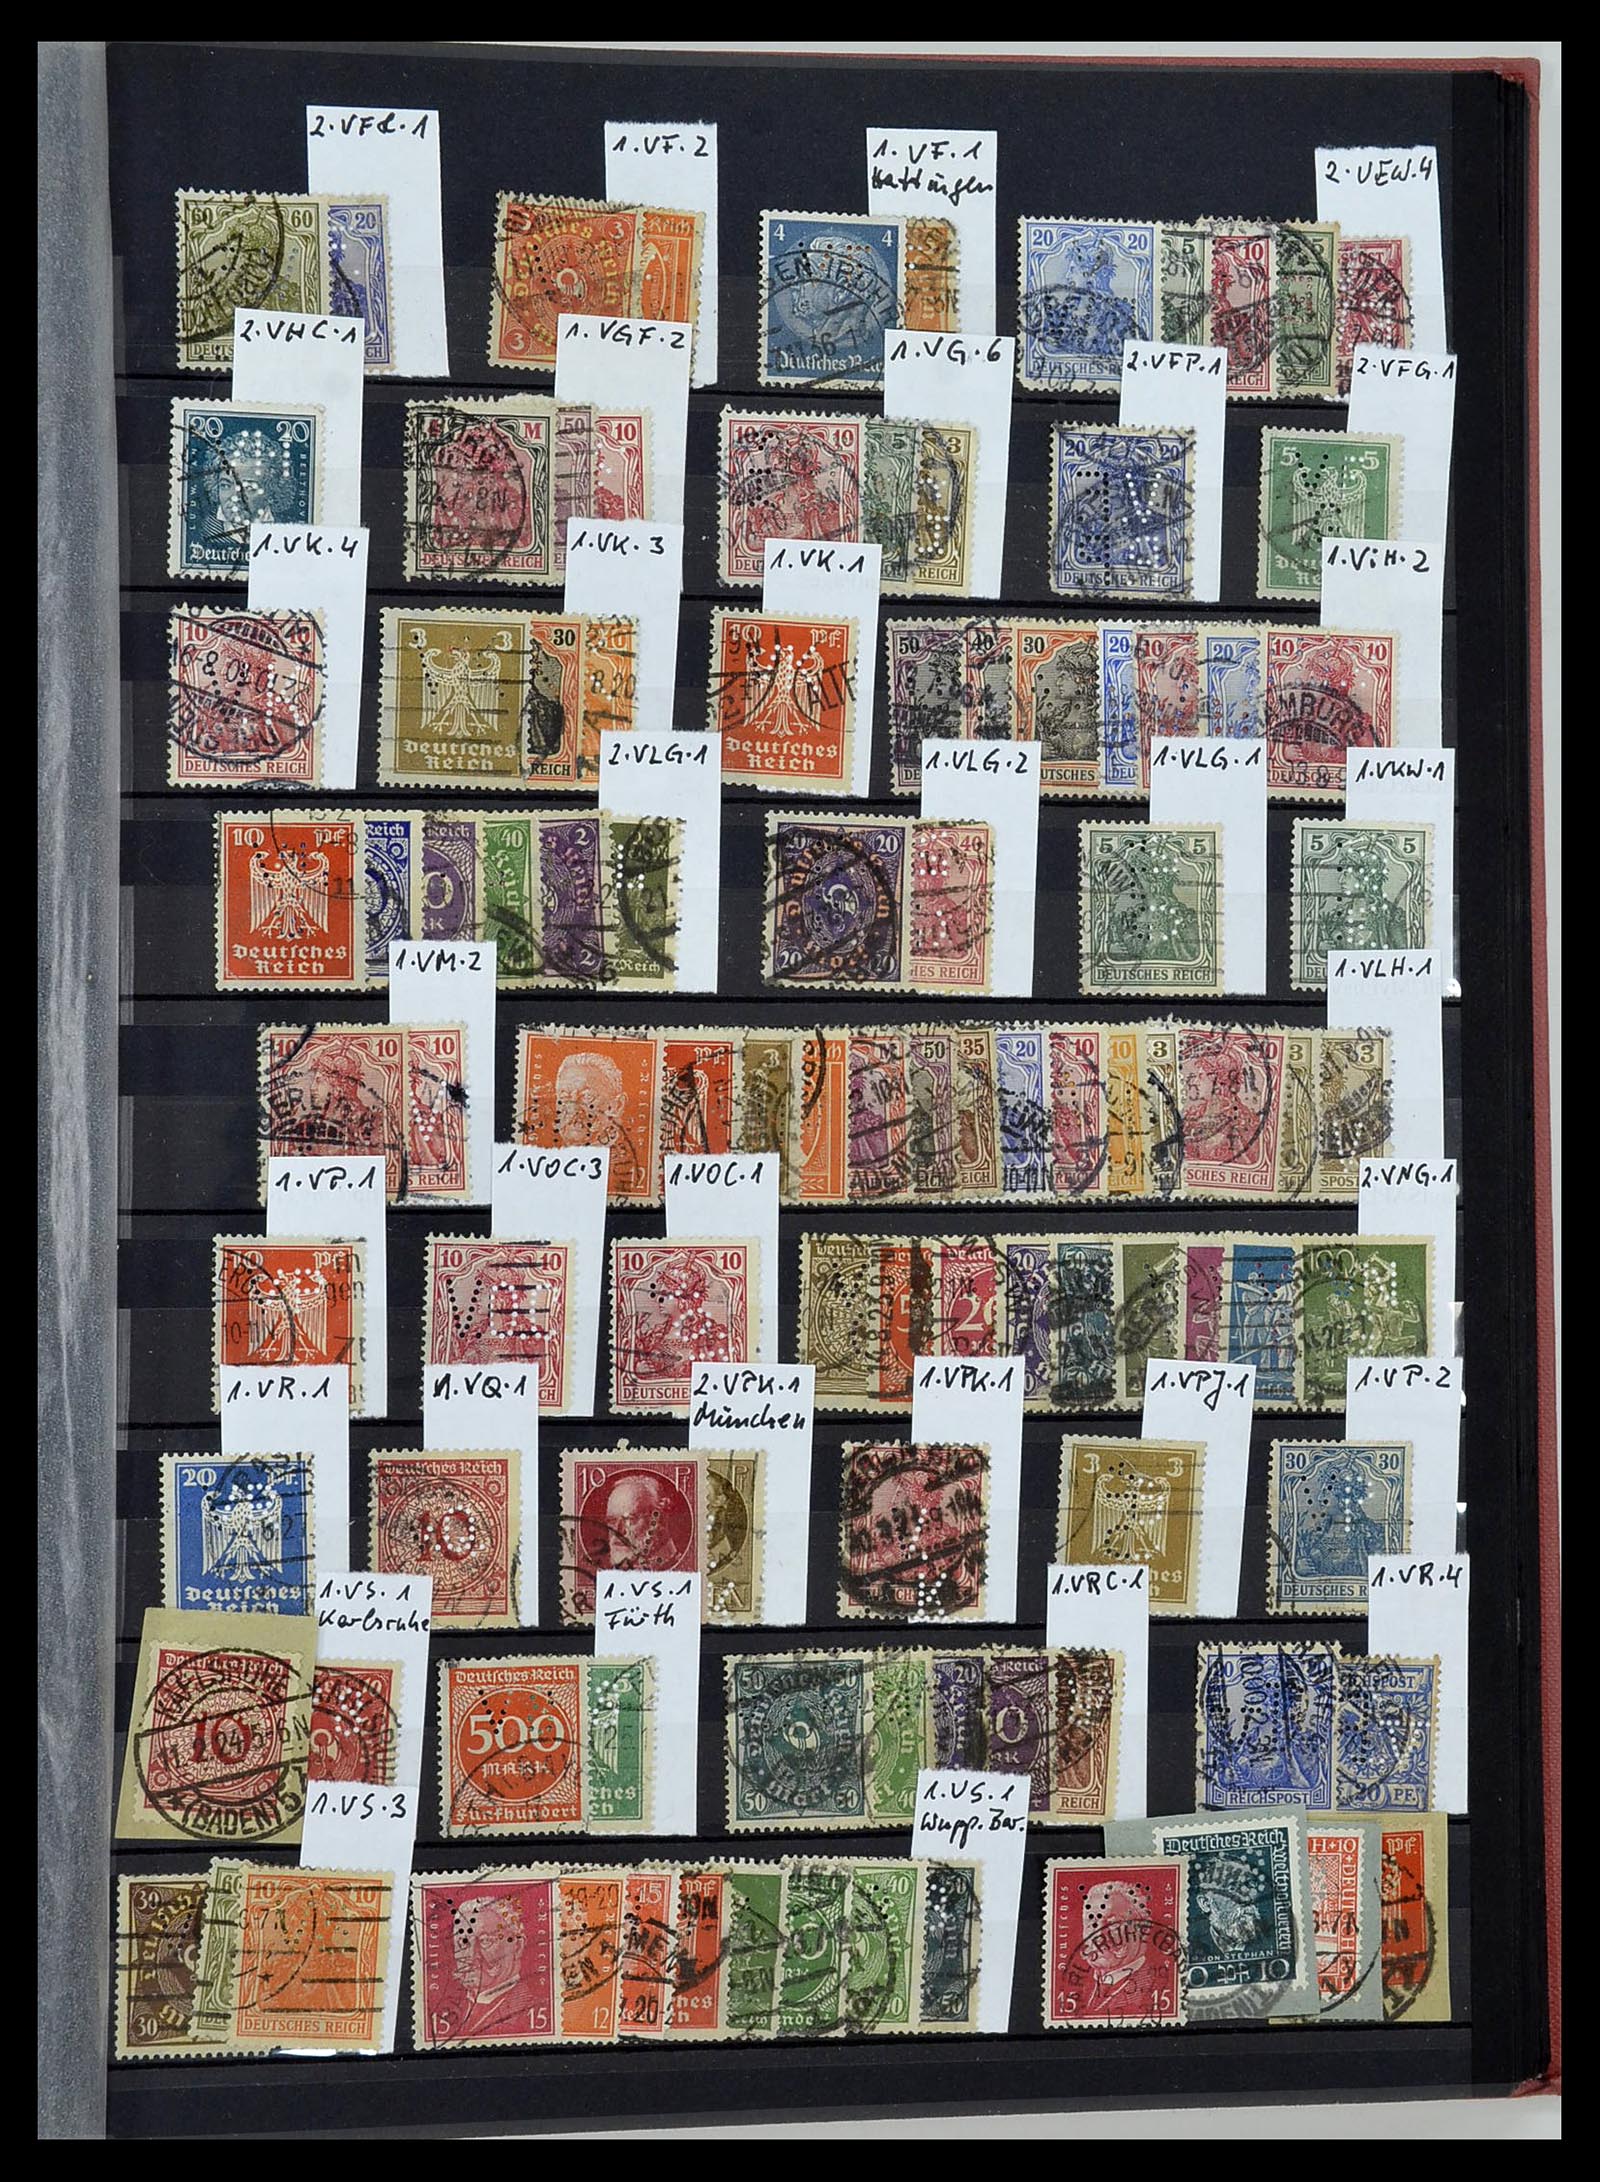 34432 047 - Stamp Collection 34432 German Reich perfins 1900-1933.